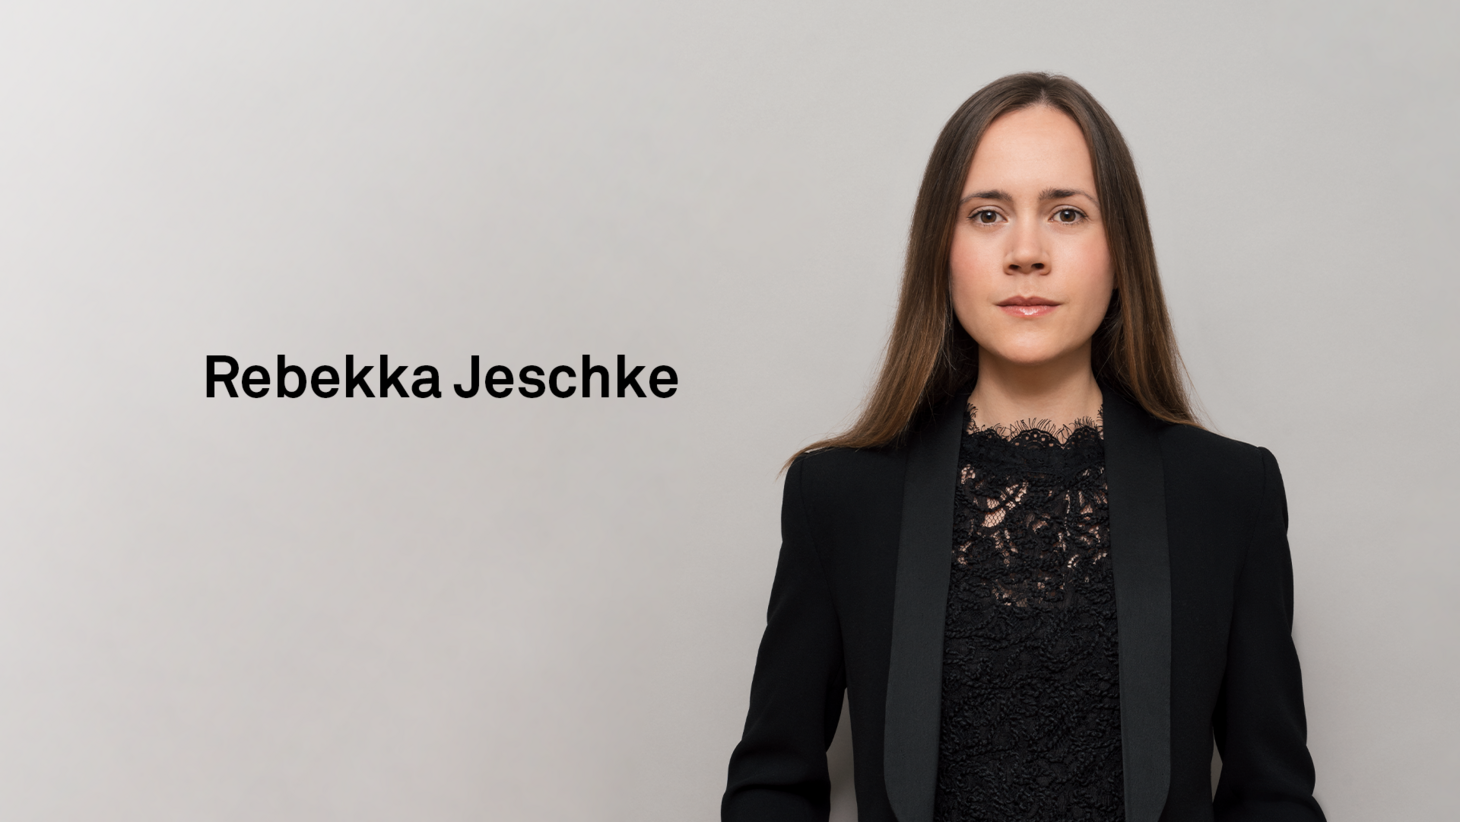  Rebekka Jeschke